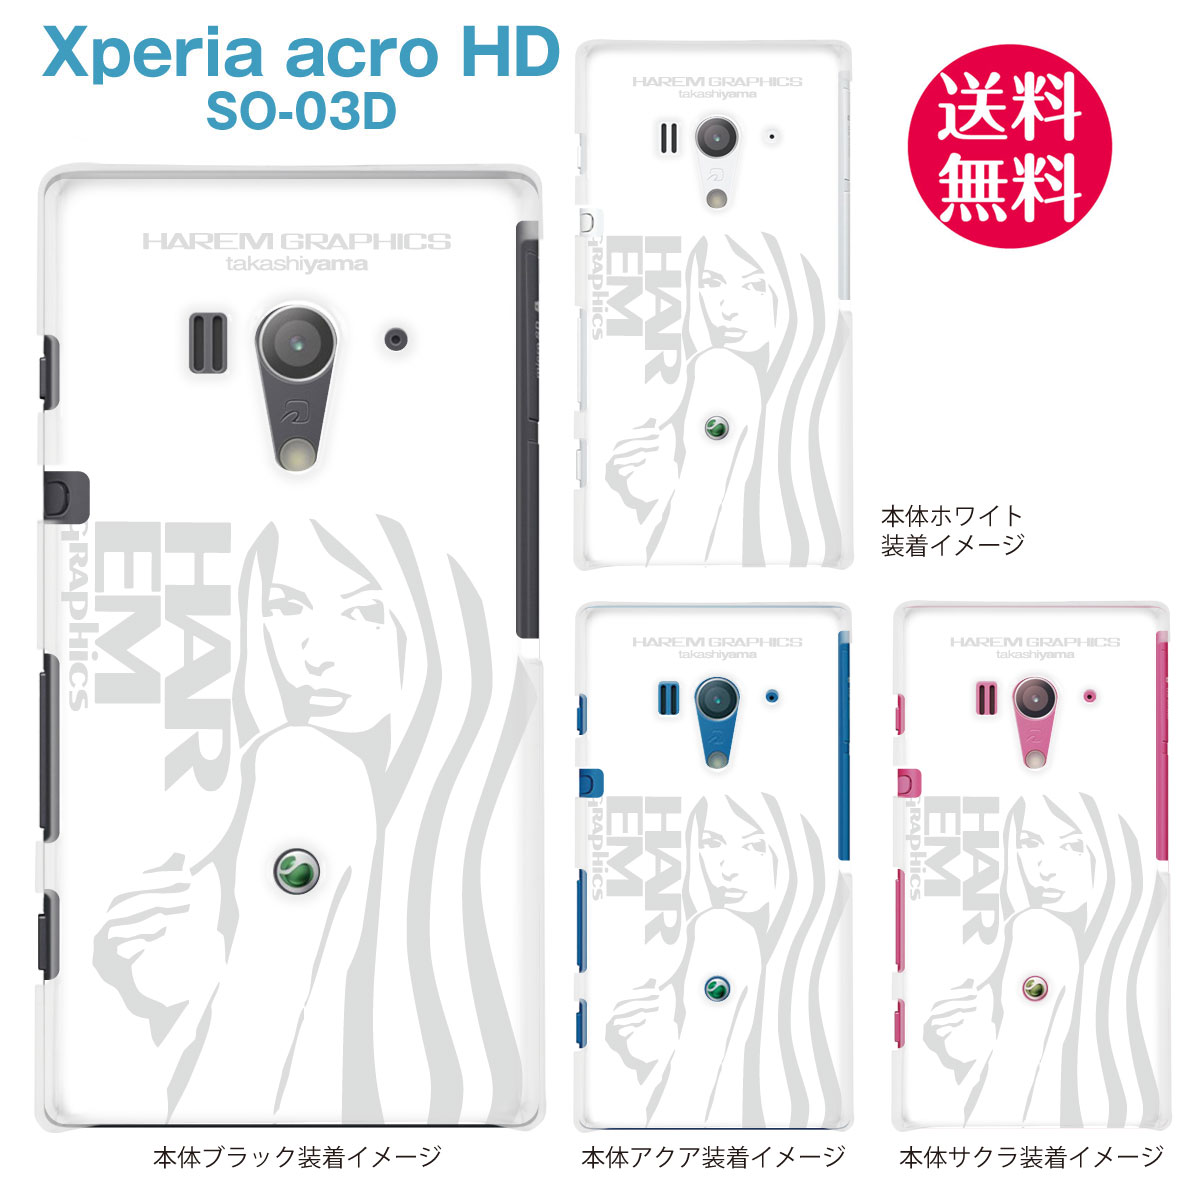 【HAREM GRAPHICS】【Xperia acro HD SO-03D】【docomo】【au】【IS12S】【ケース】【カバー】【スマホケース】【クリアケース】　hgx-so03d-0018a